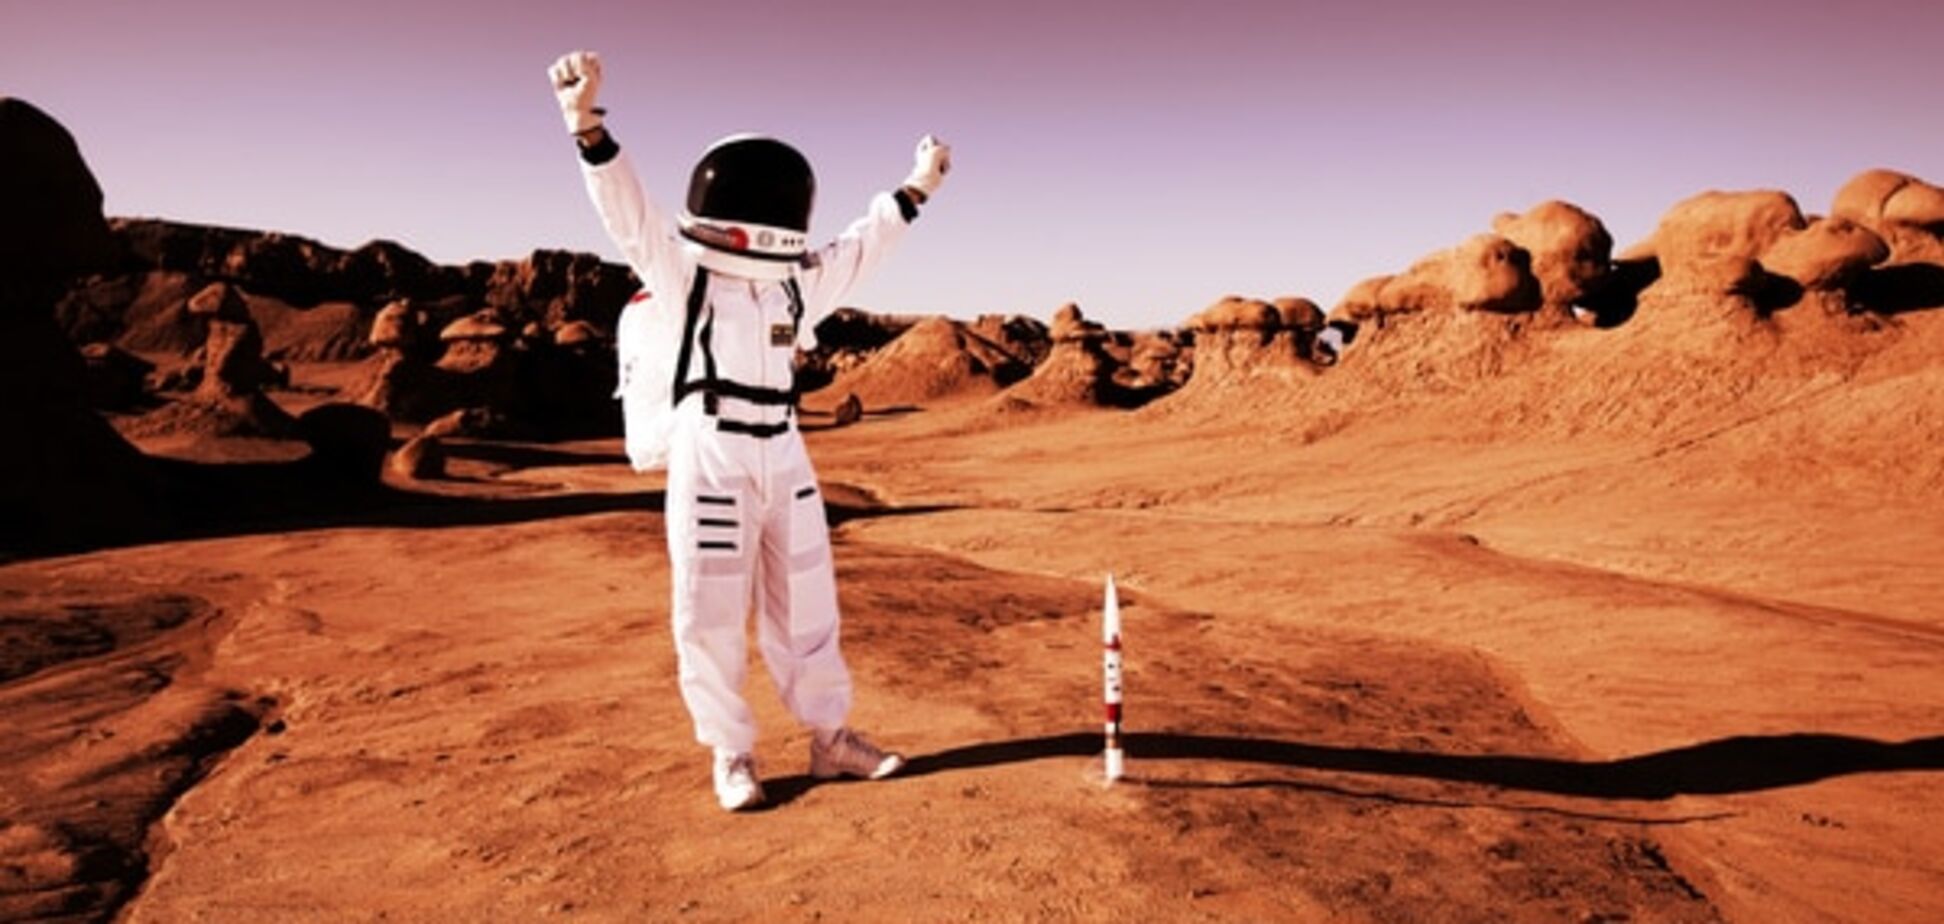 Ученые поставили крест на колонизации Марса: жизни там не будет